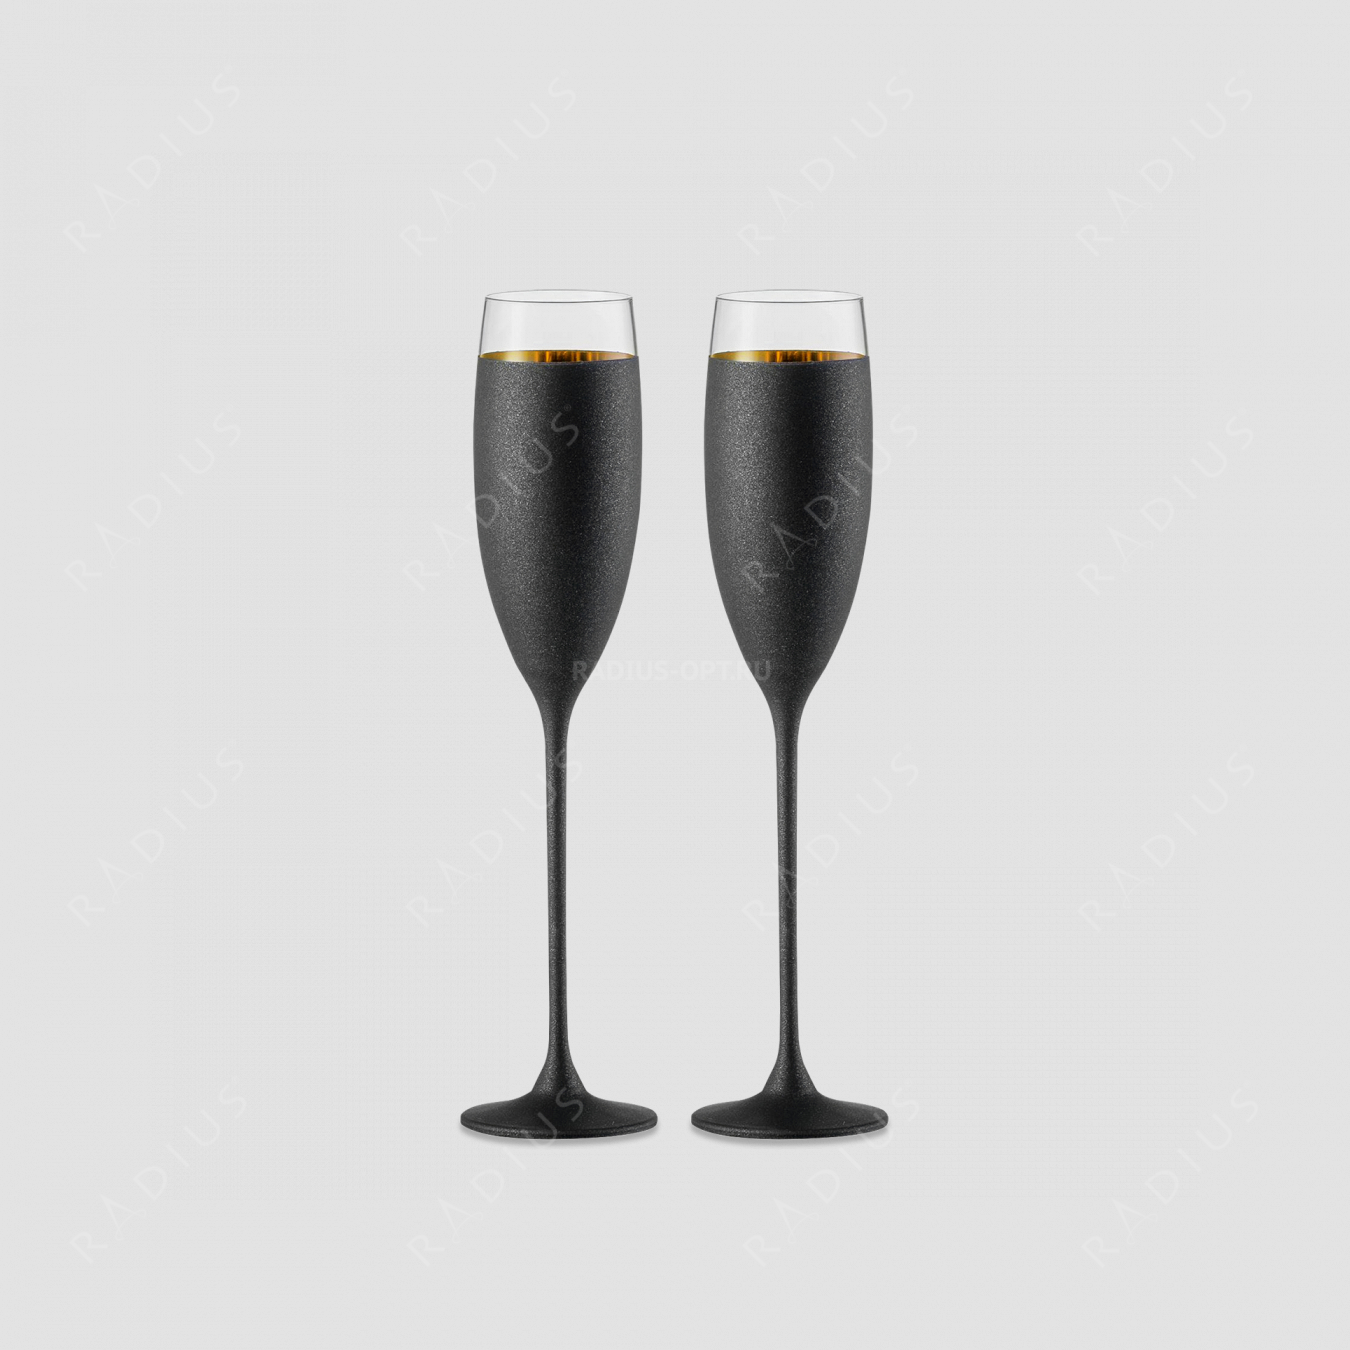 Набор из 2-х хрустальных бокалов для шампанского, объем: 180 мл, материал: бессвинцовый хрусталь, цвет: черный/золото, серия Champagner Exklusiv, EISCH, Германия